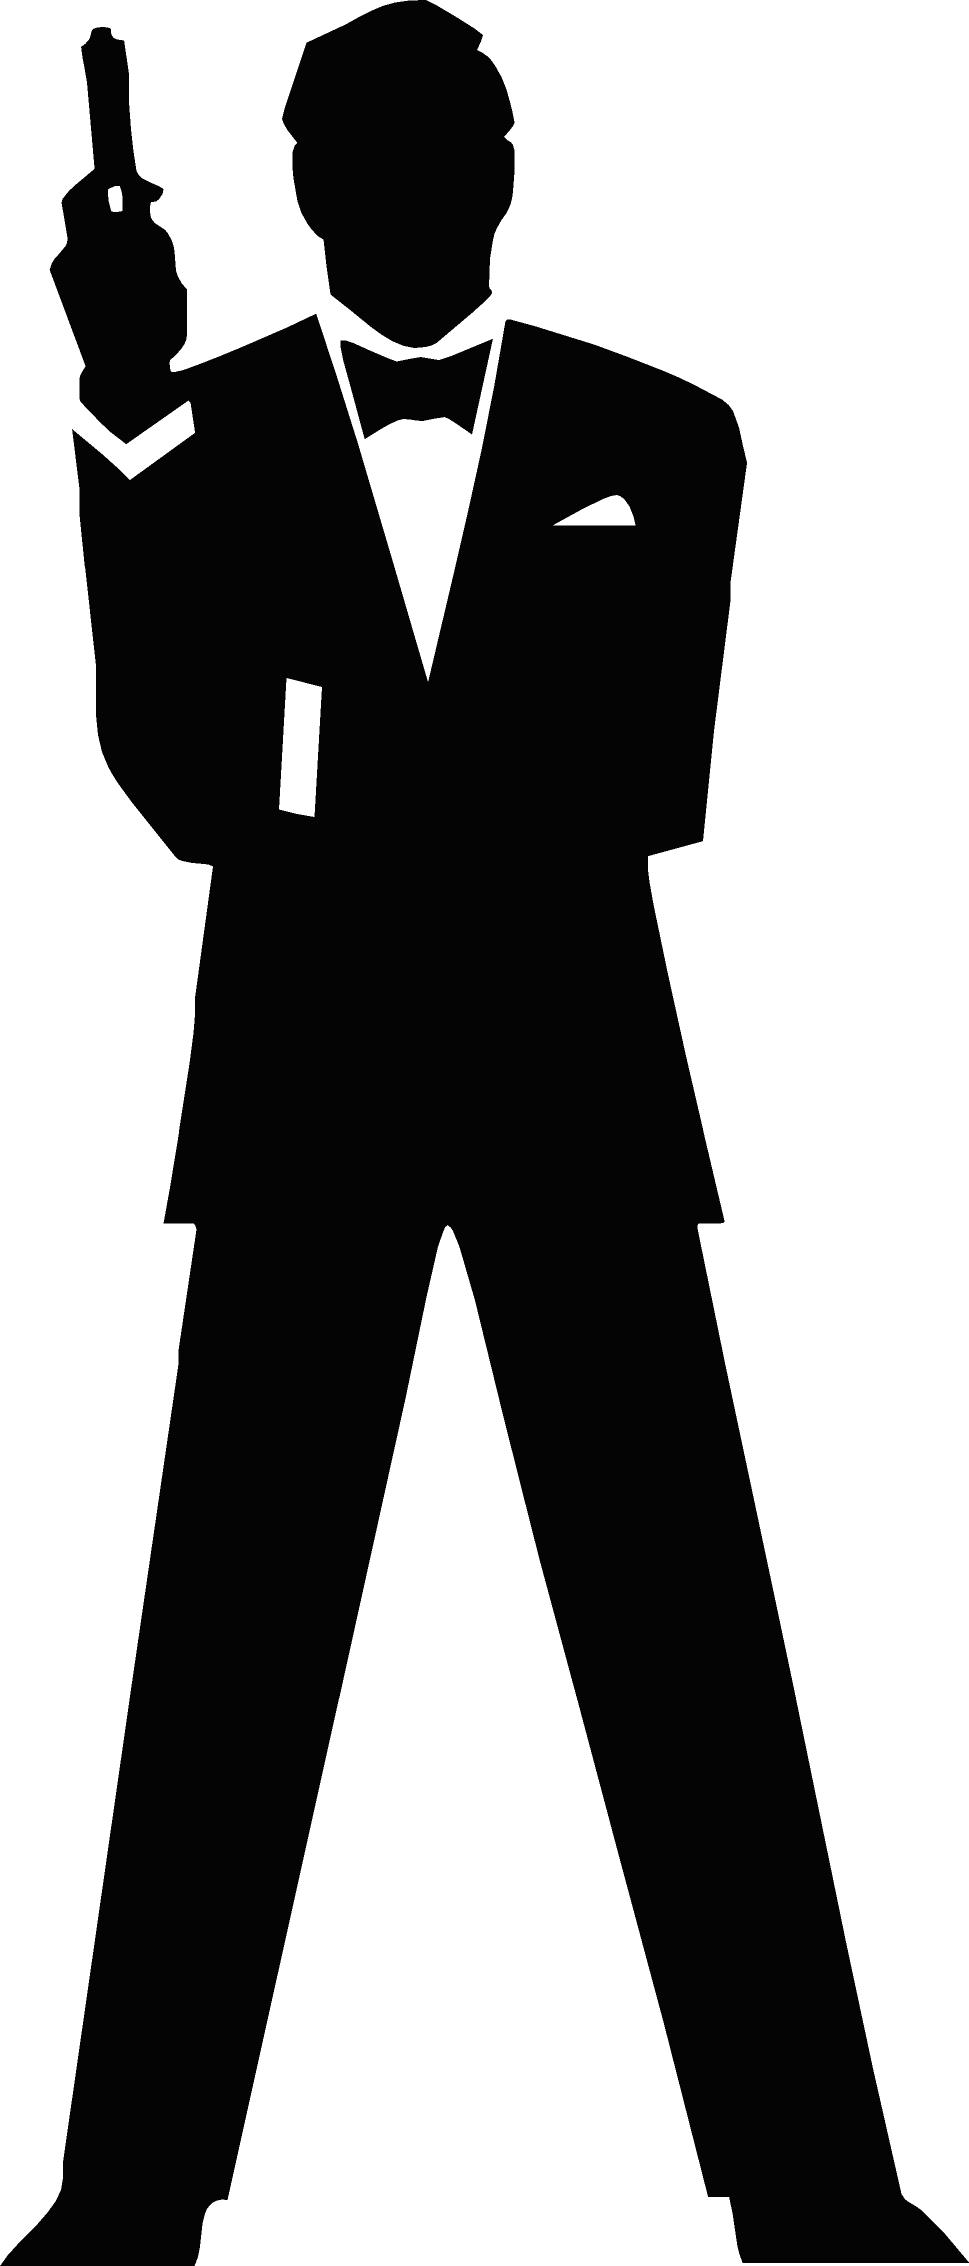 Secret agent silhouette clip art